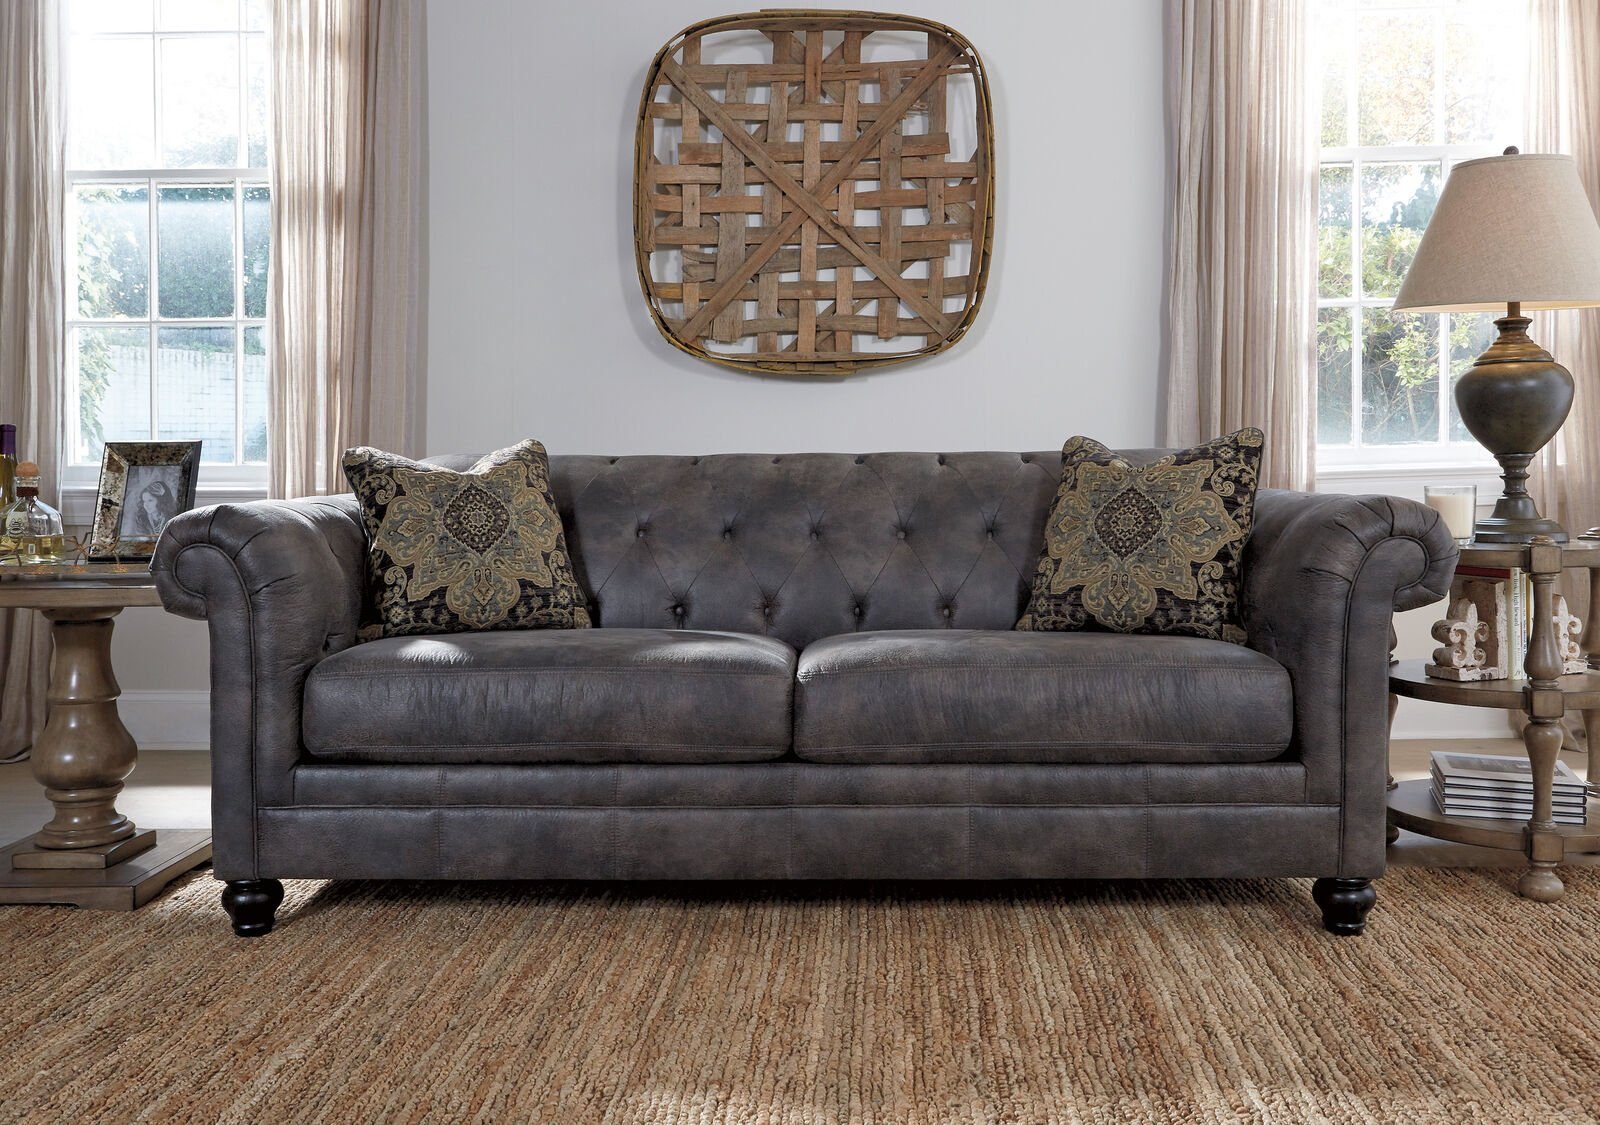 JVmoebel 3-Sitzer Chesterfield Design Luxus Polster Sofa Couch Sitz Garnitur Leder Neu, Made in Europe